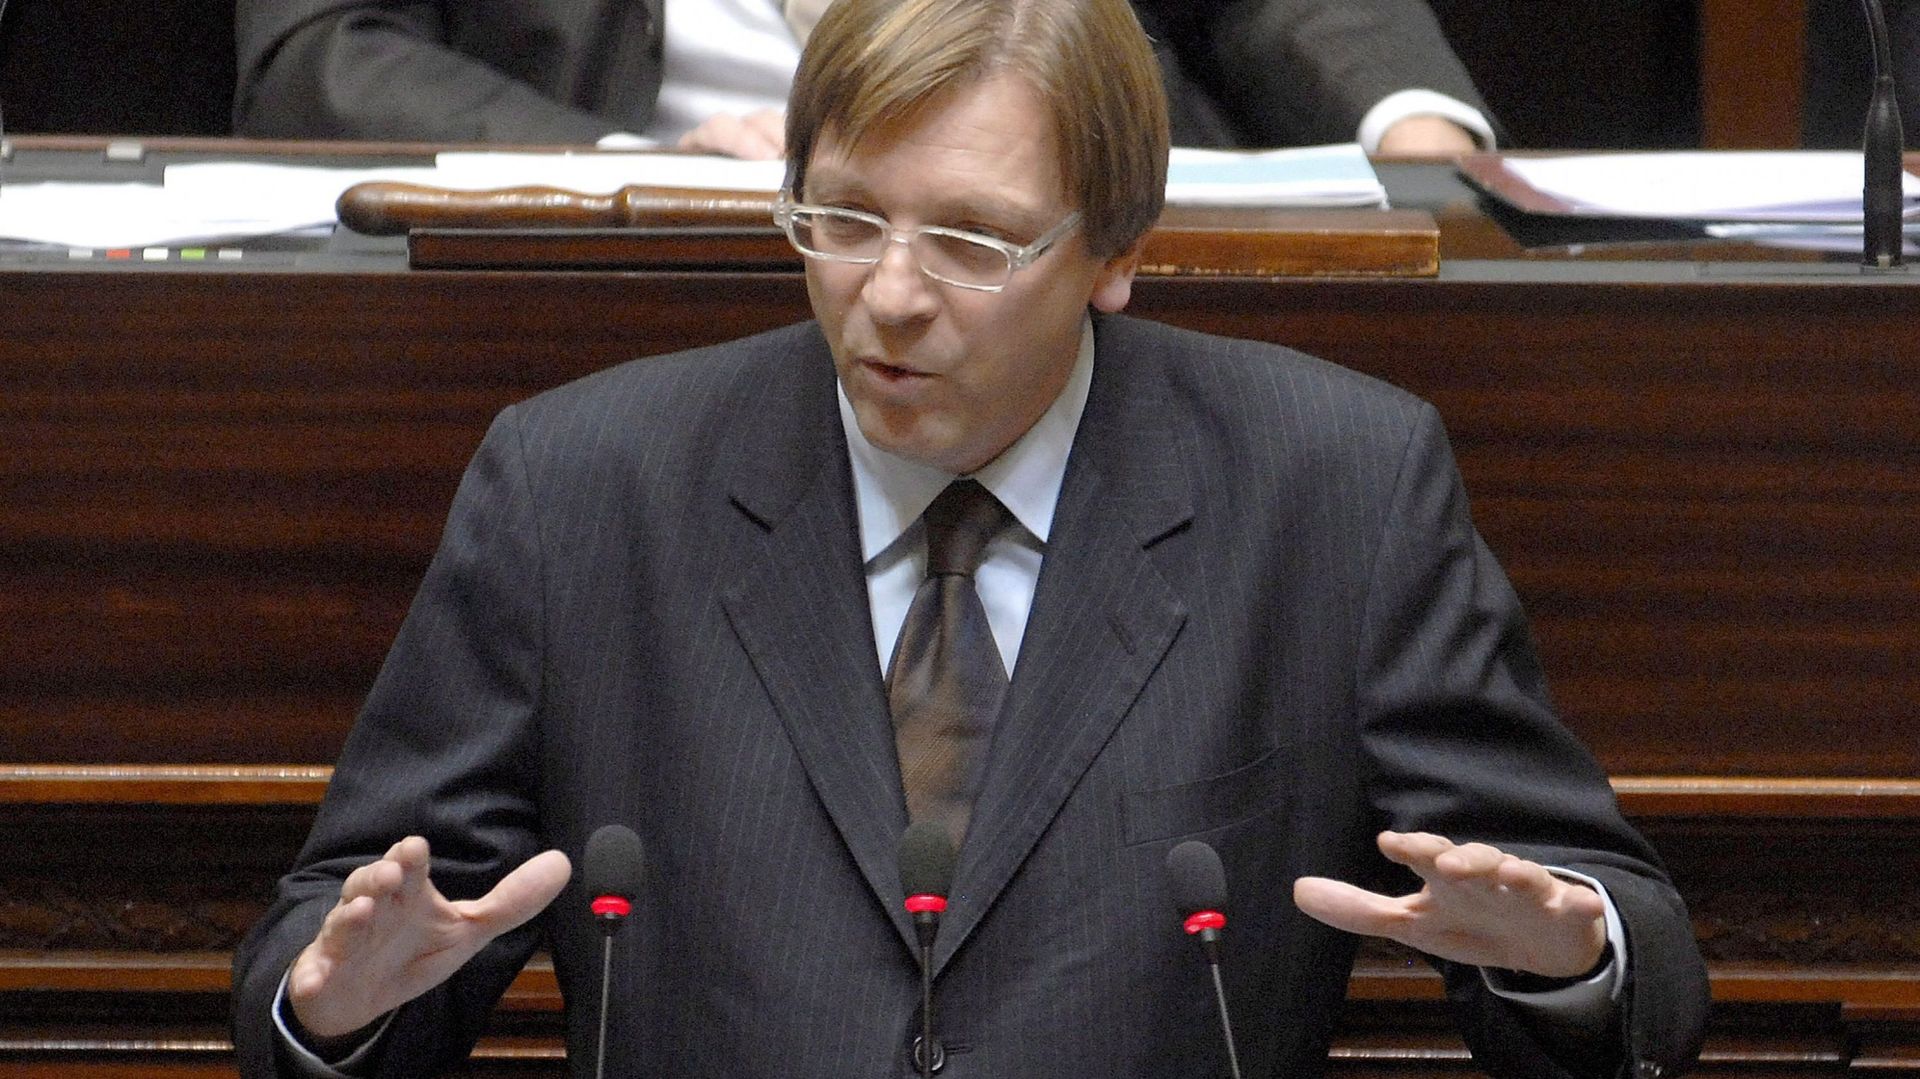 En 2007, le libéral flamand Guy Verhofstadt avait échoué à créer un gouvernement composé des seuls  libéraux et démocrates-chrétiens sous les couleurs de l'orange-bleue 